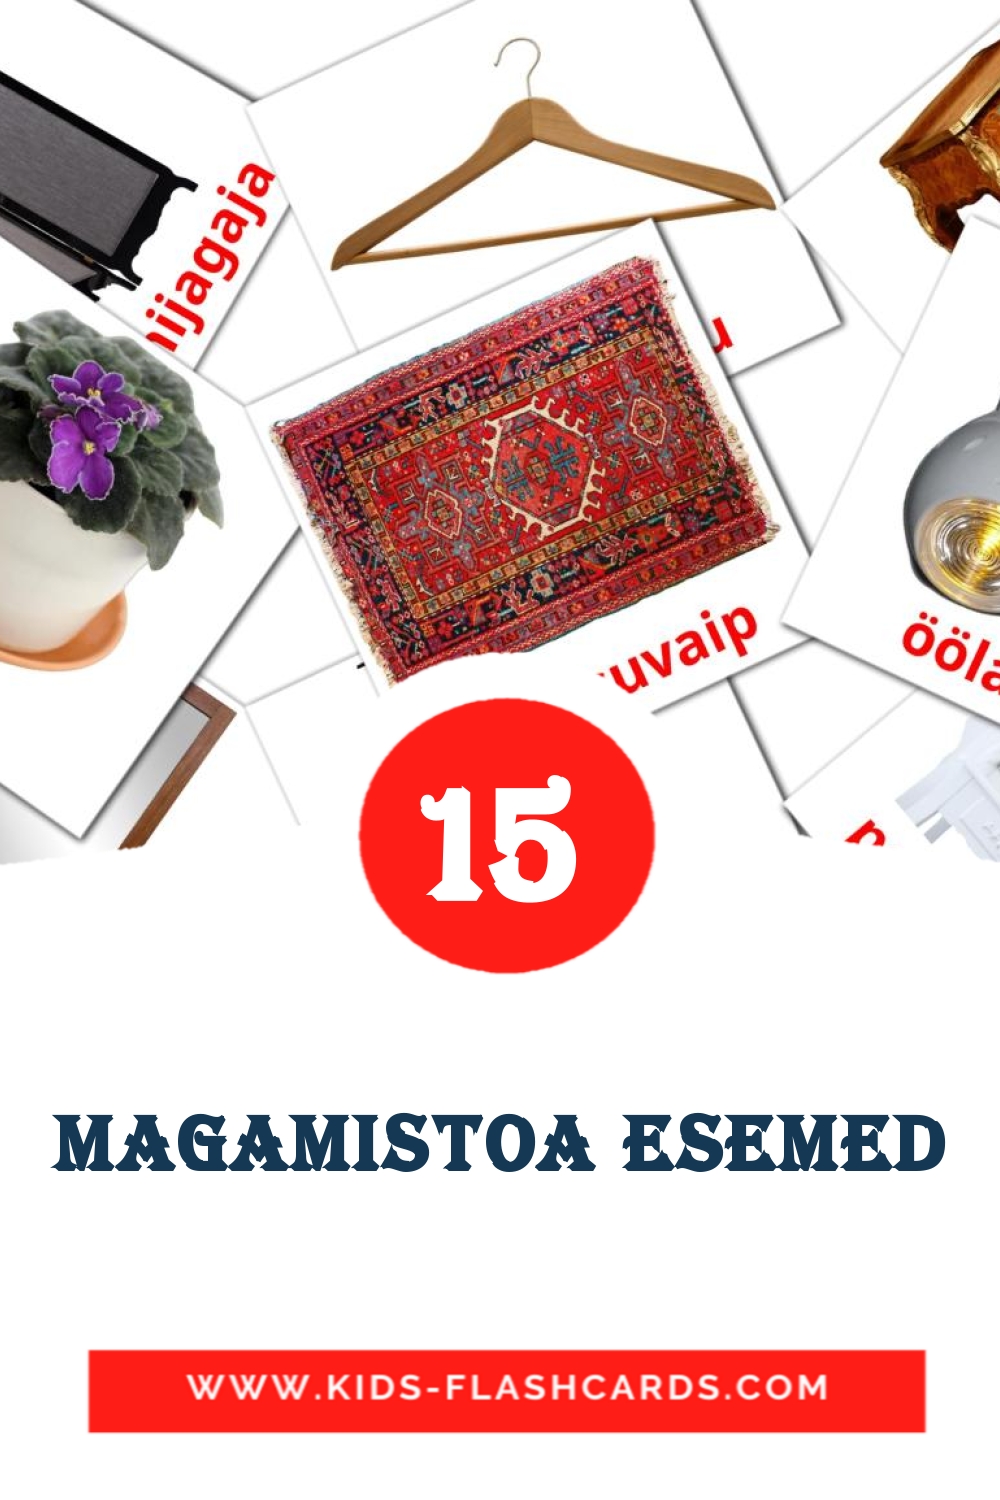 15 Magamistoa esemed fotokaarten voor kleuters in het estlands